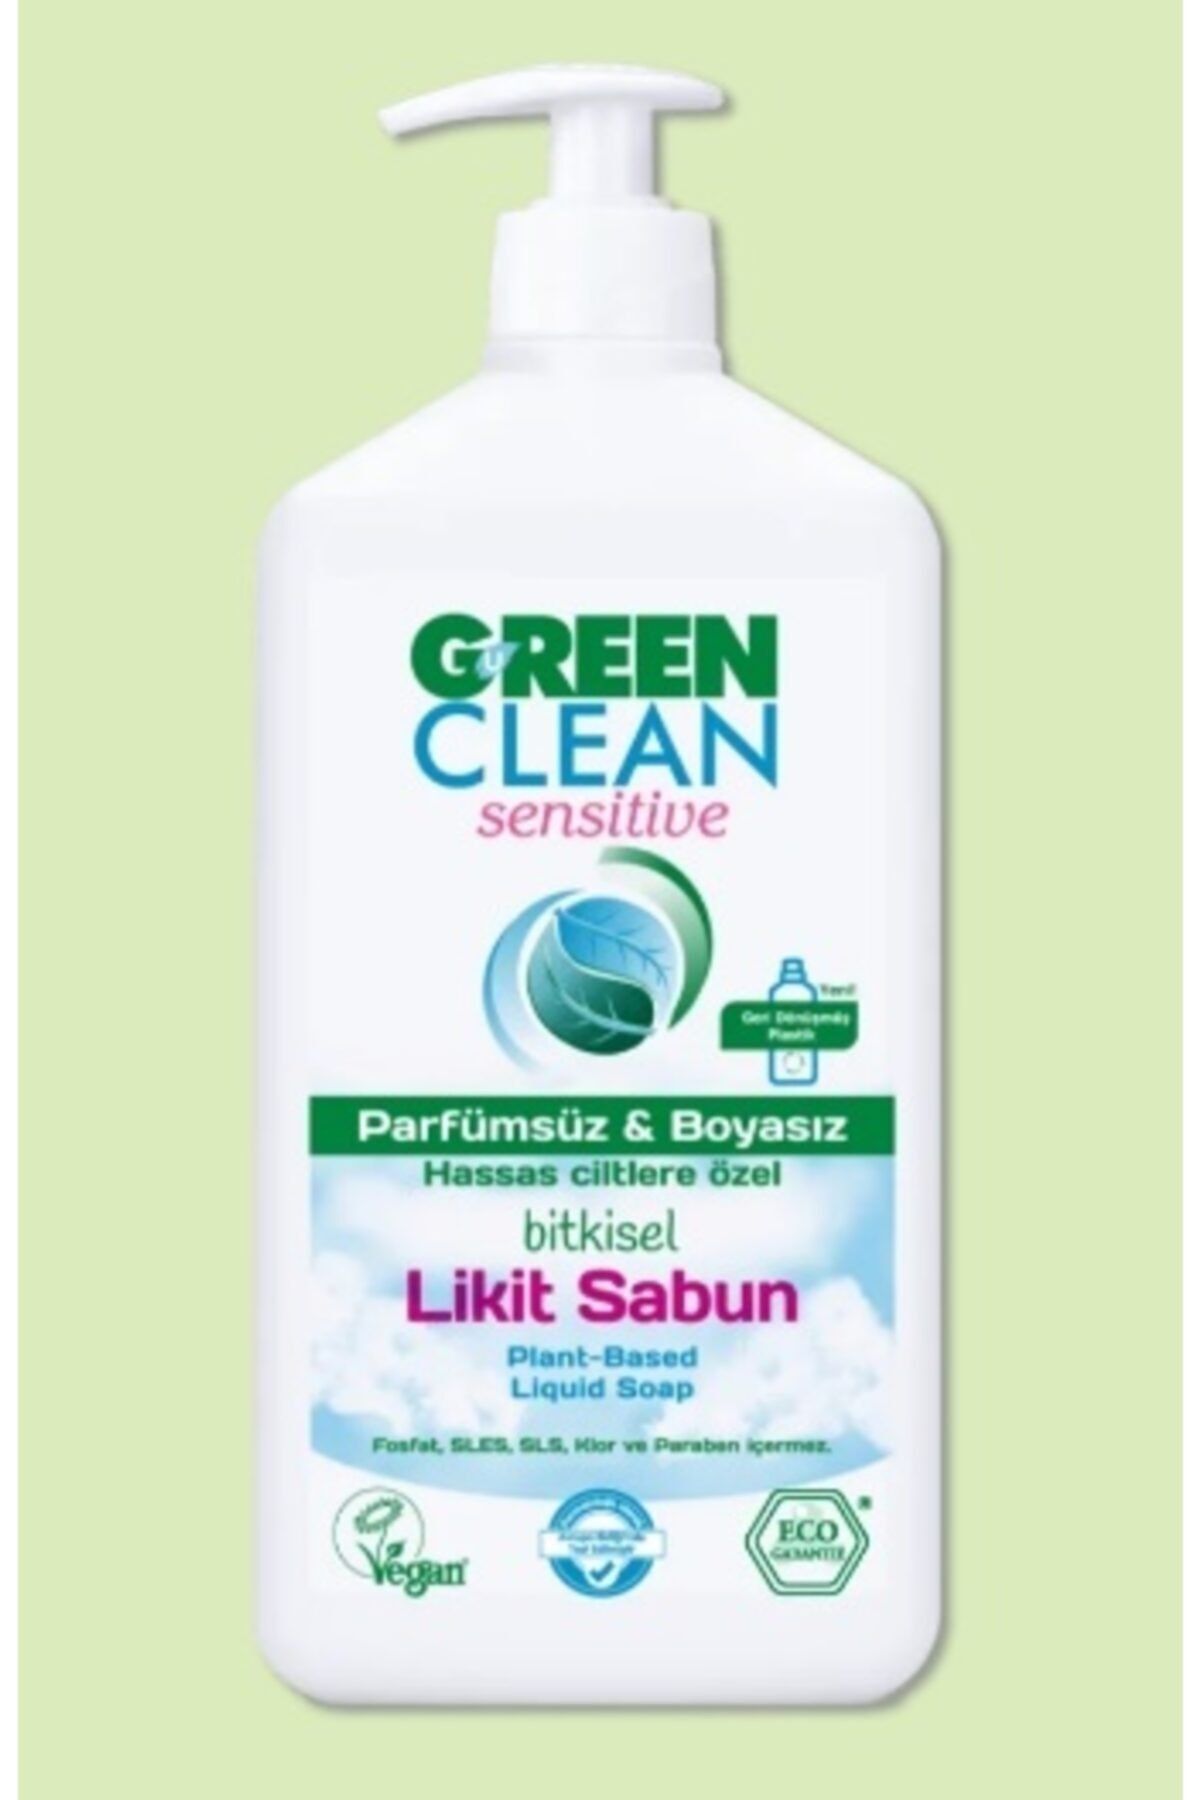 Green Clean Organik Portakal Yağlı Bitkisel Likit Sabun Parfümsüz&boyasız (500 Ml)